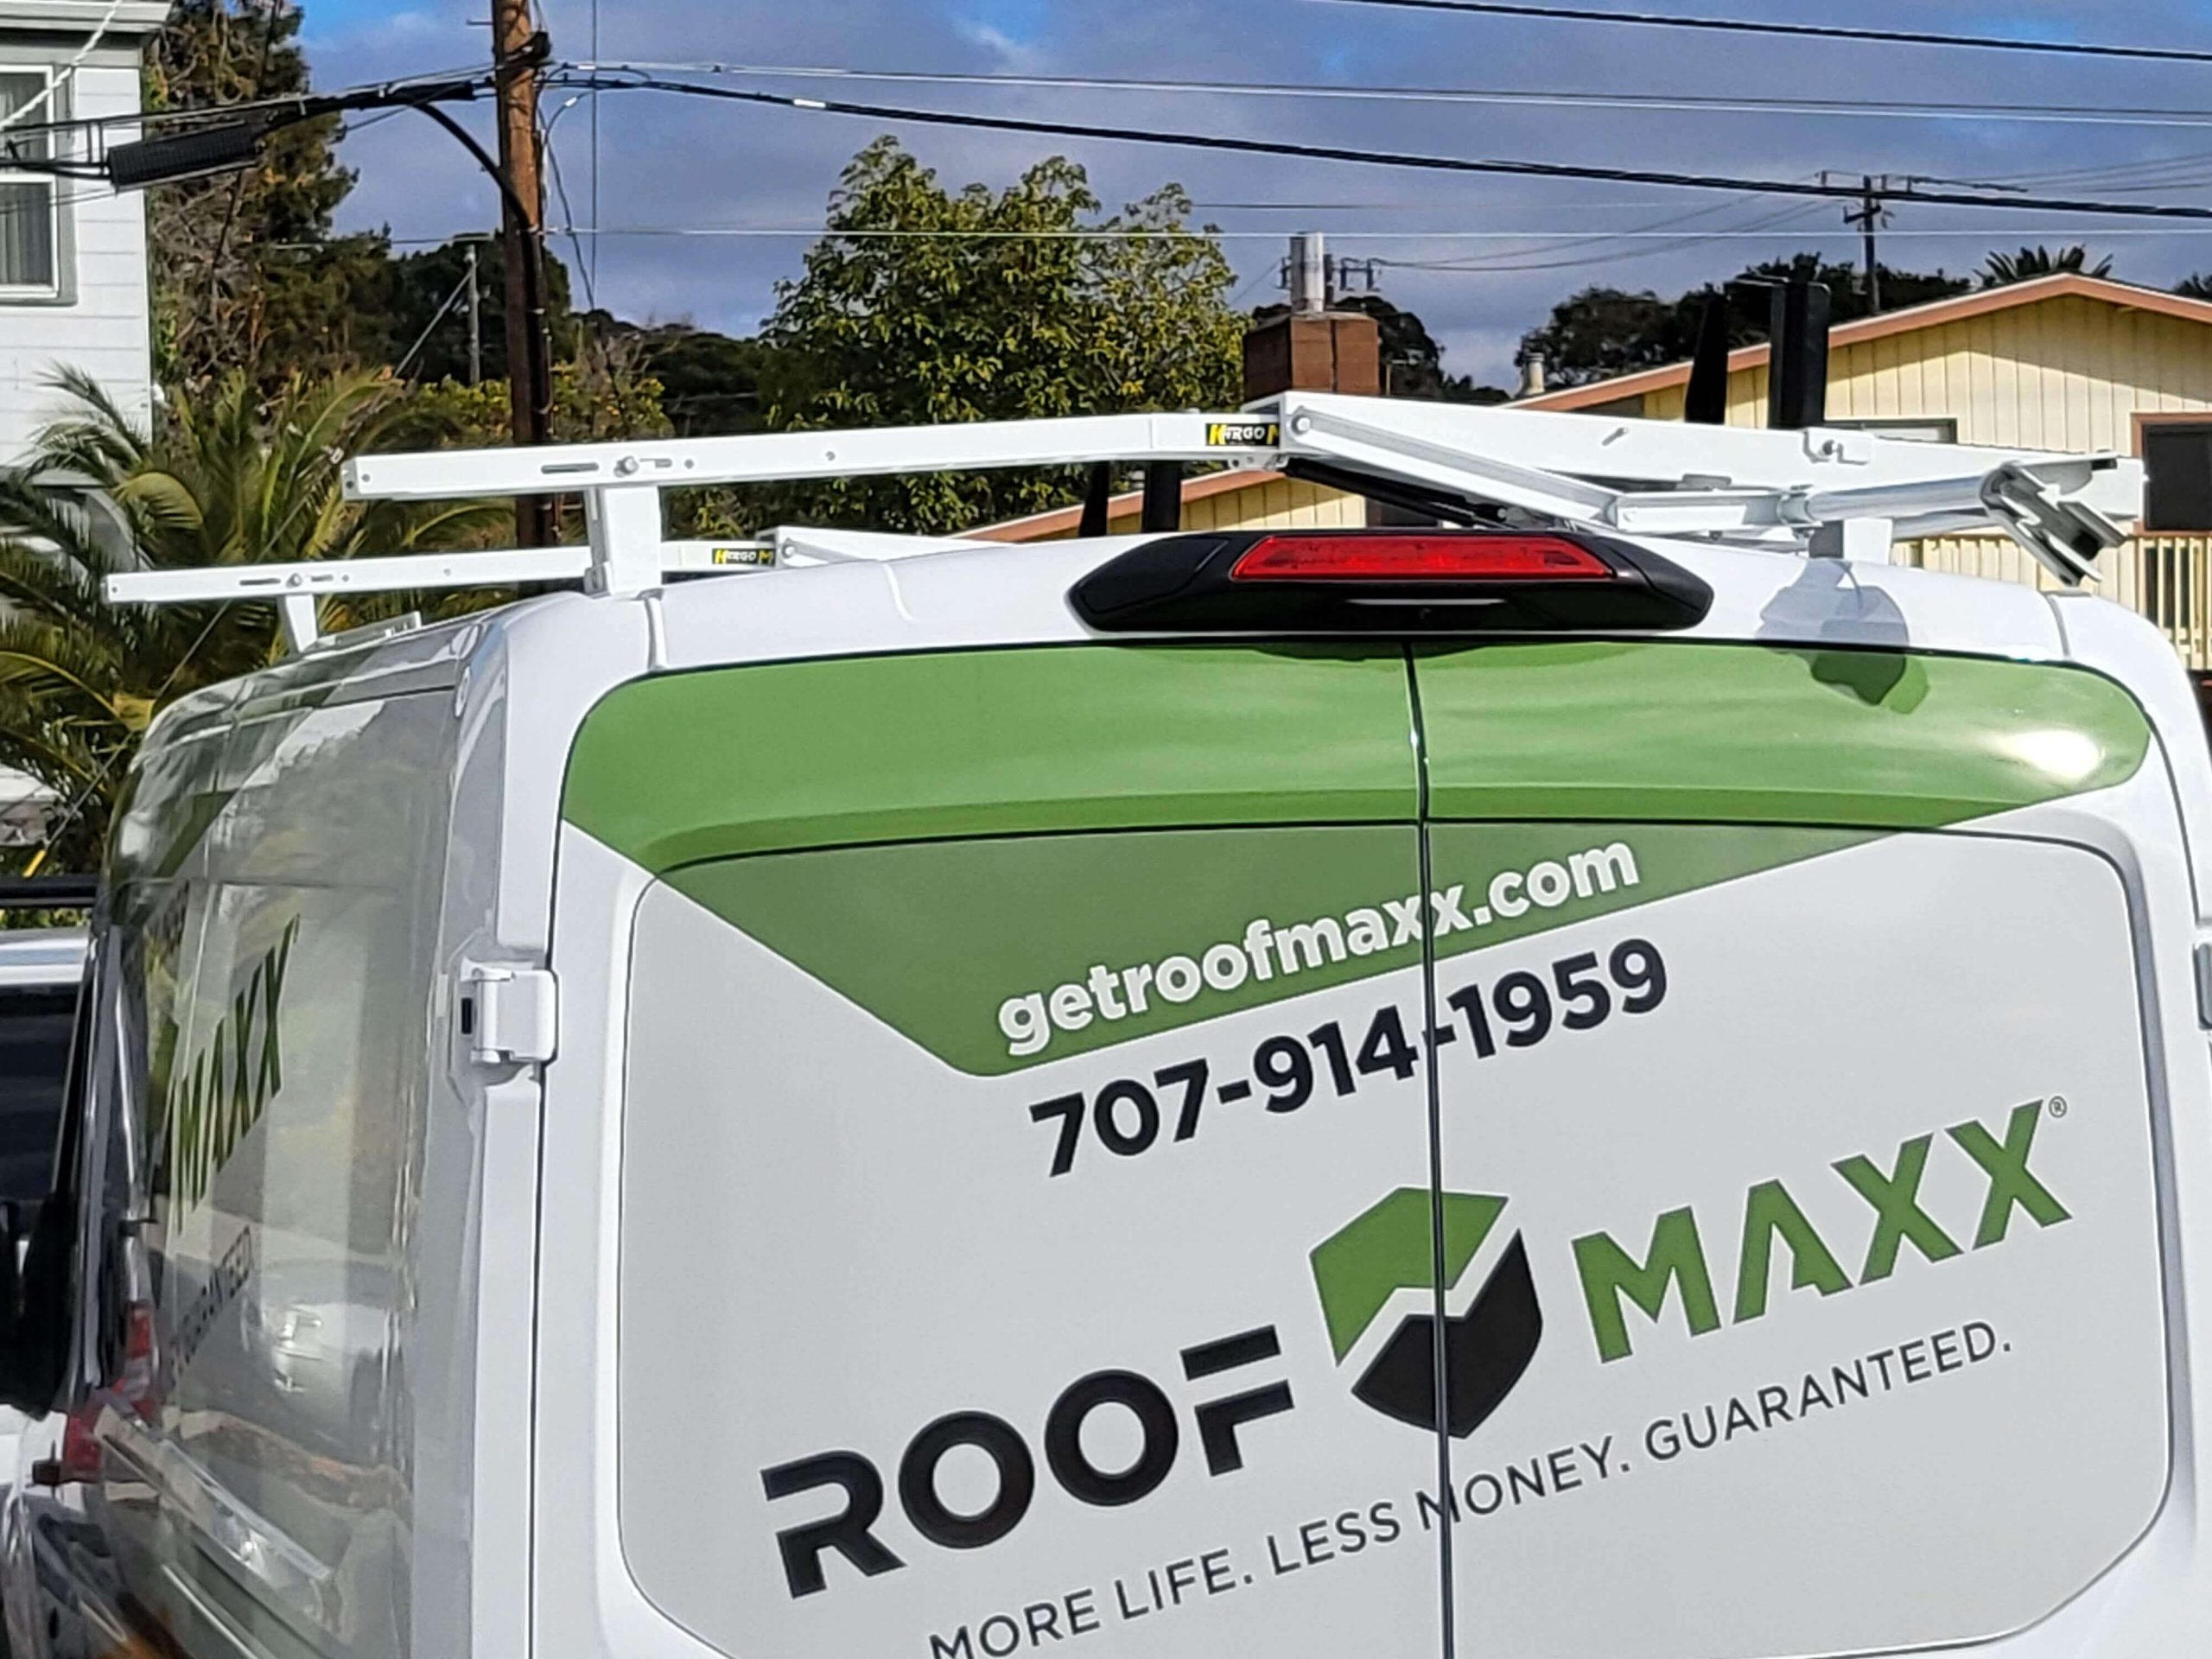 van of roof maxx